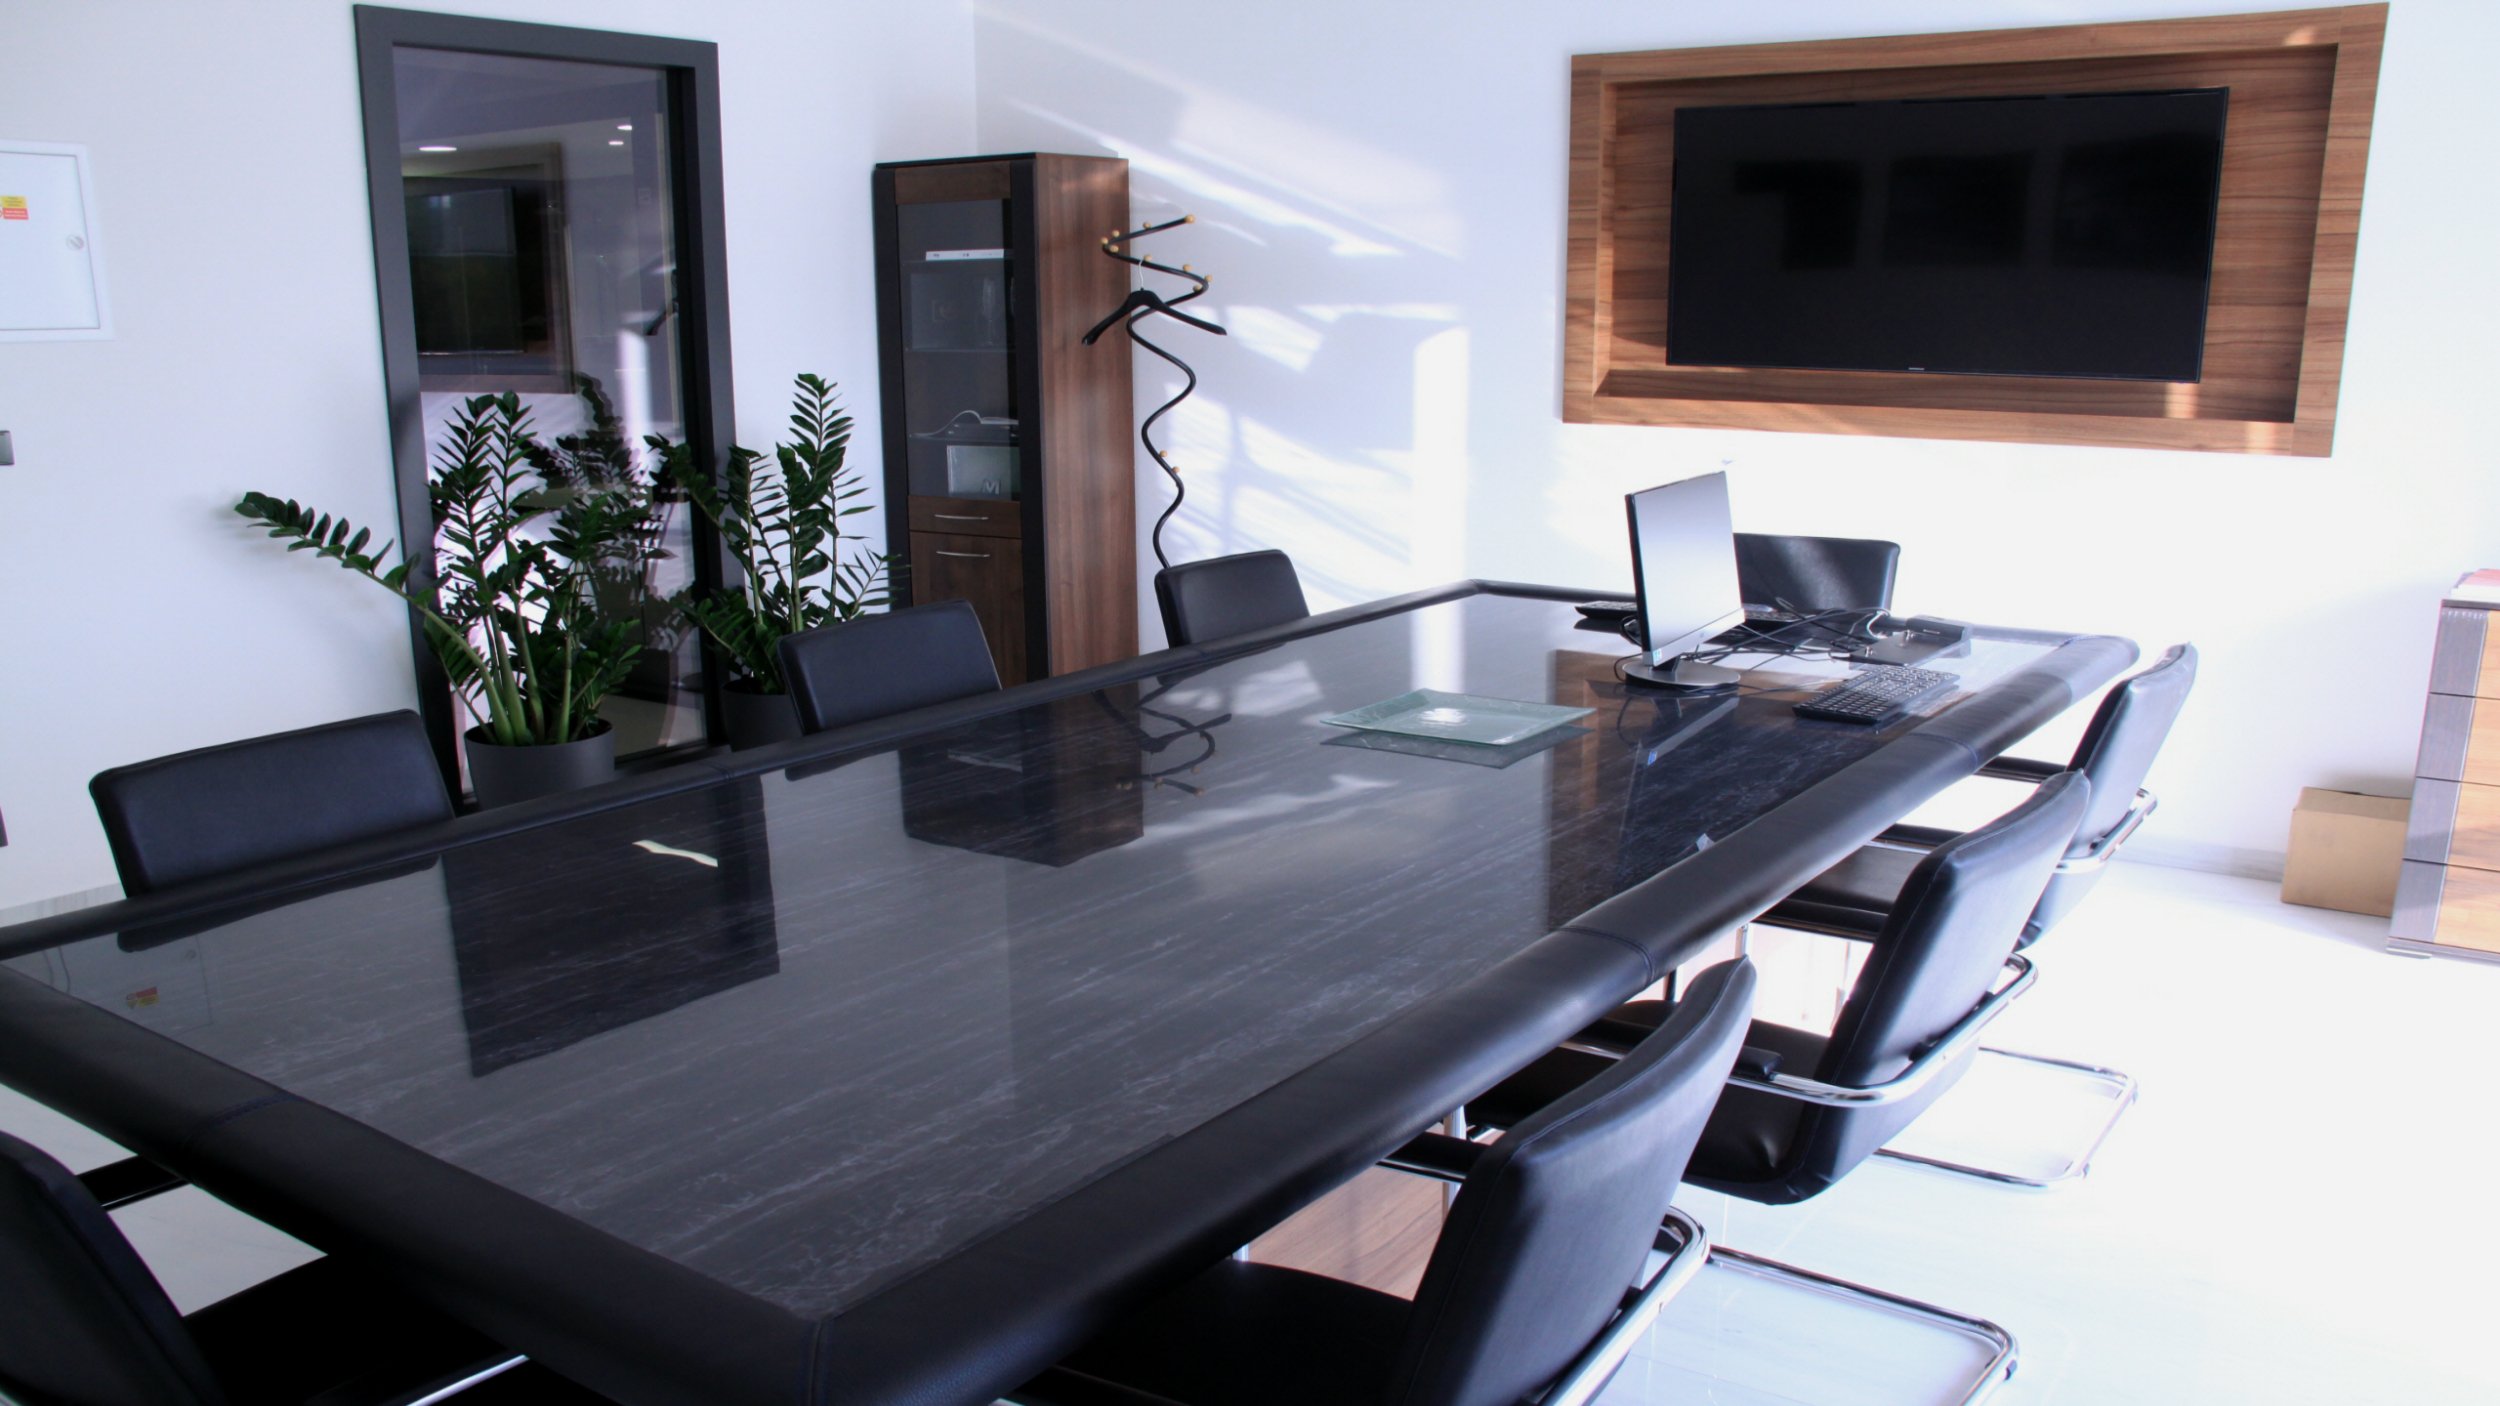 Stůl v zasedací místnosti s podkladovou deskou a koženým lemováním